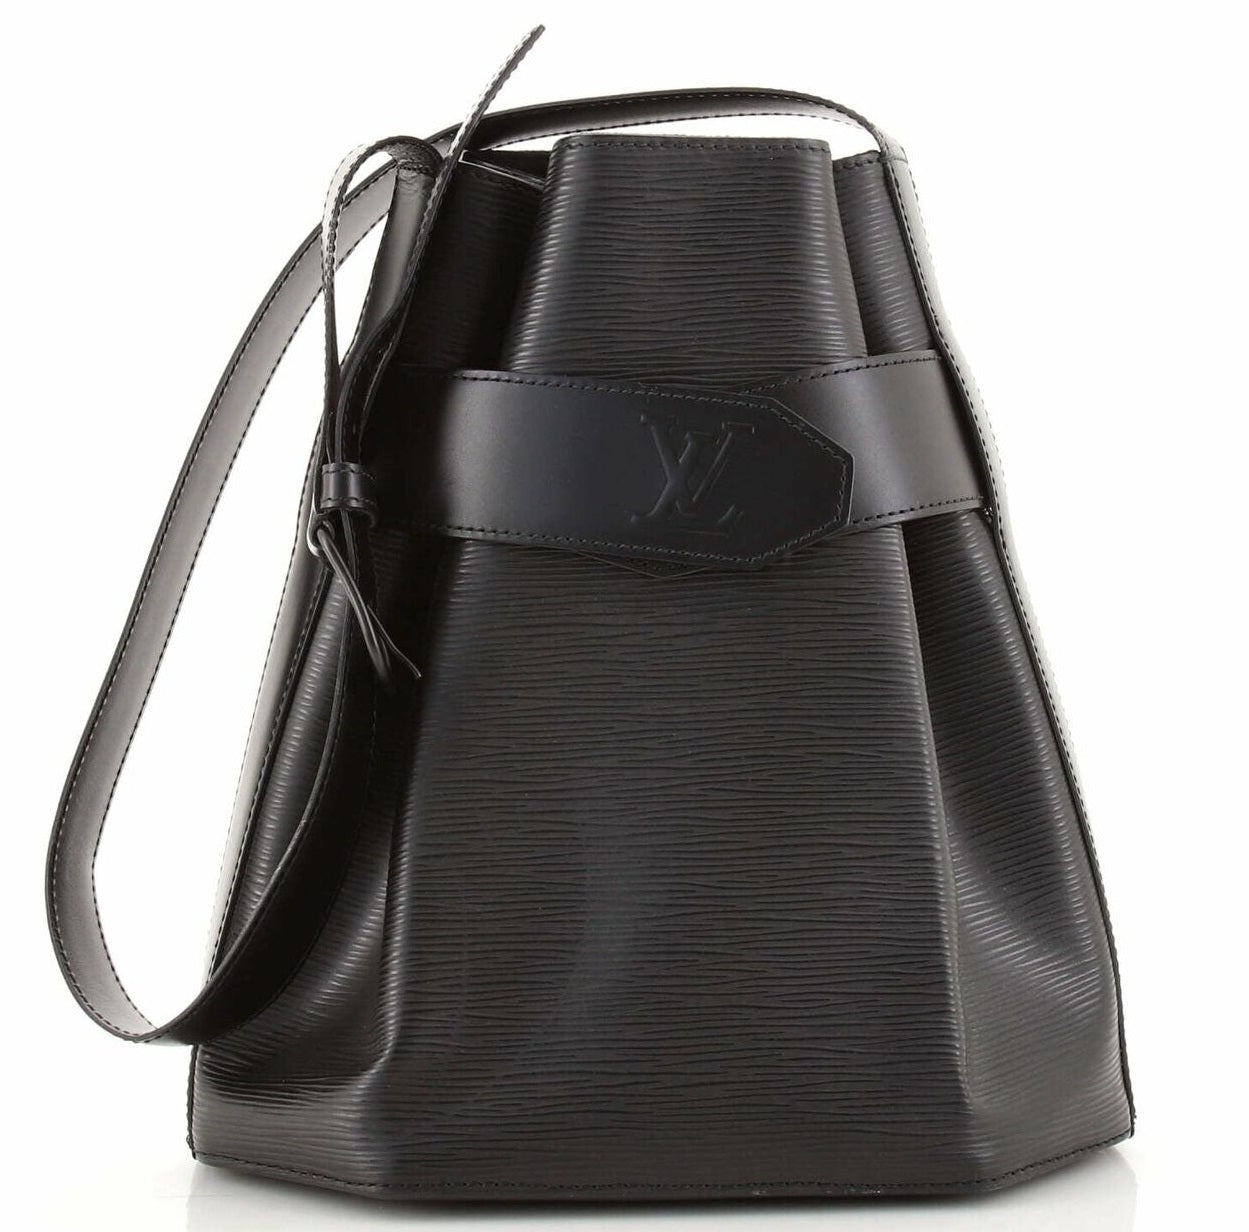 14 bolsas de Louis Vuitton más populares, sus nombres y precios en  2022-2023 – Bagaholic